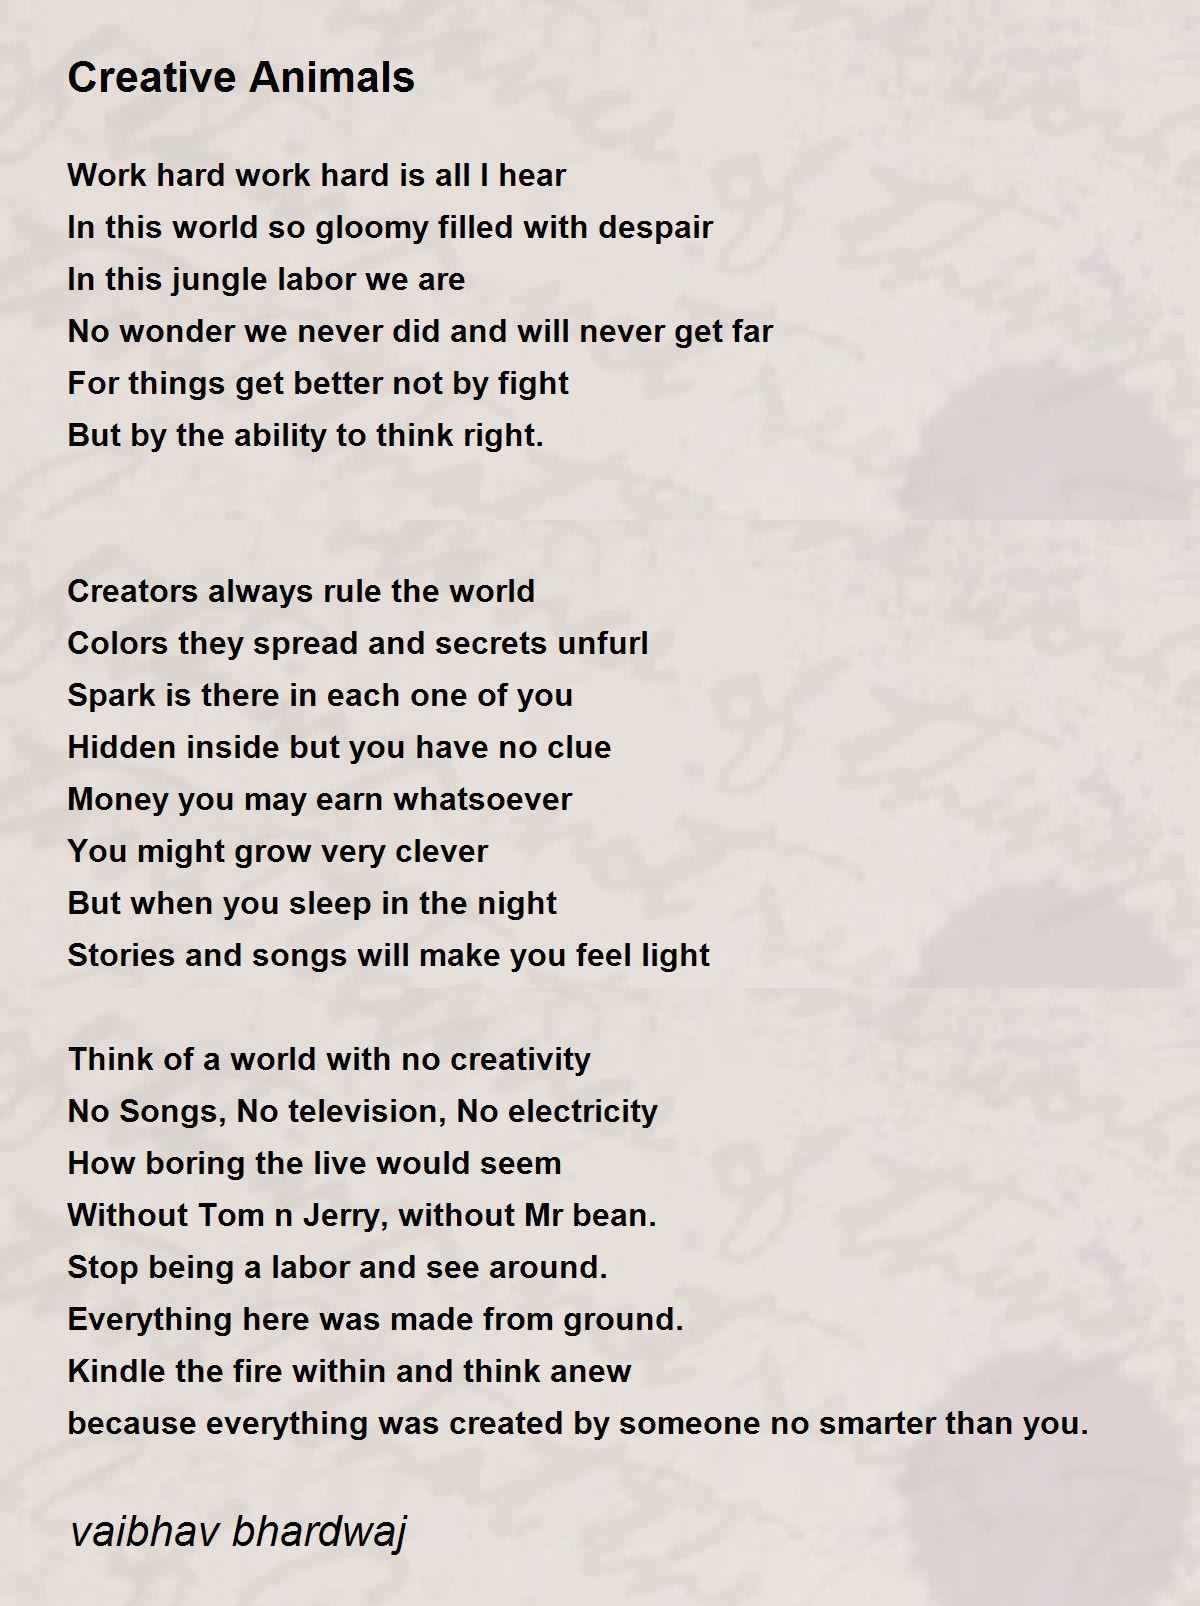 Creative Animals - Creative Animals Poem by vaibhav bhardwaj